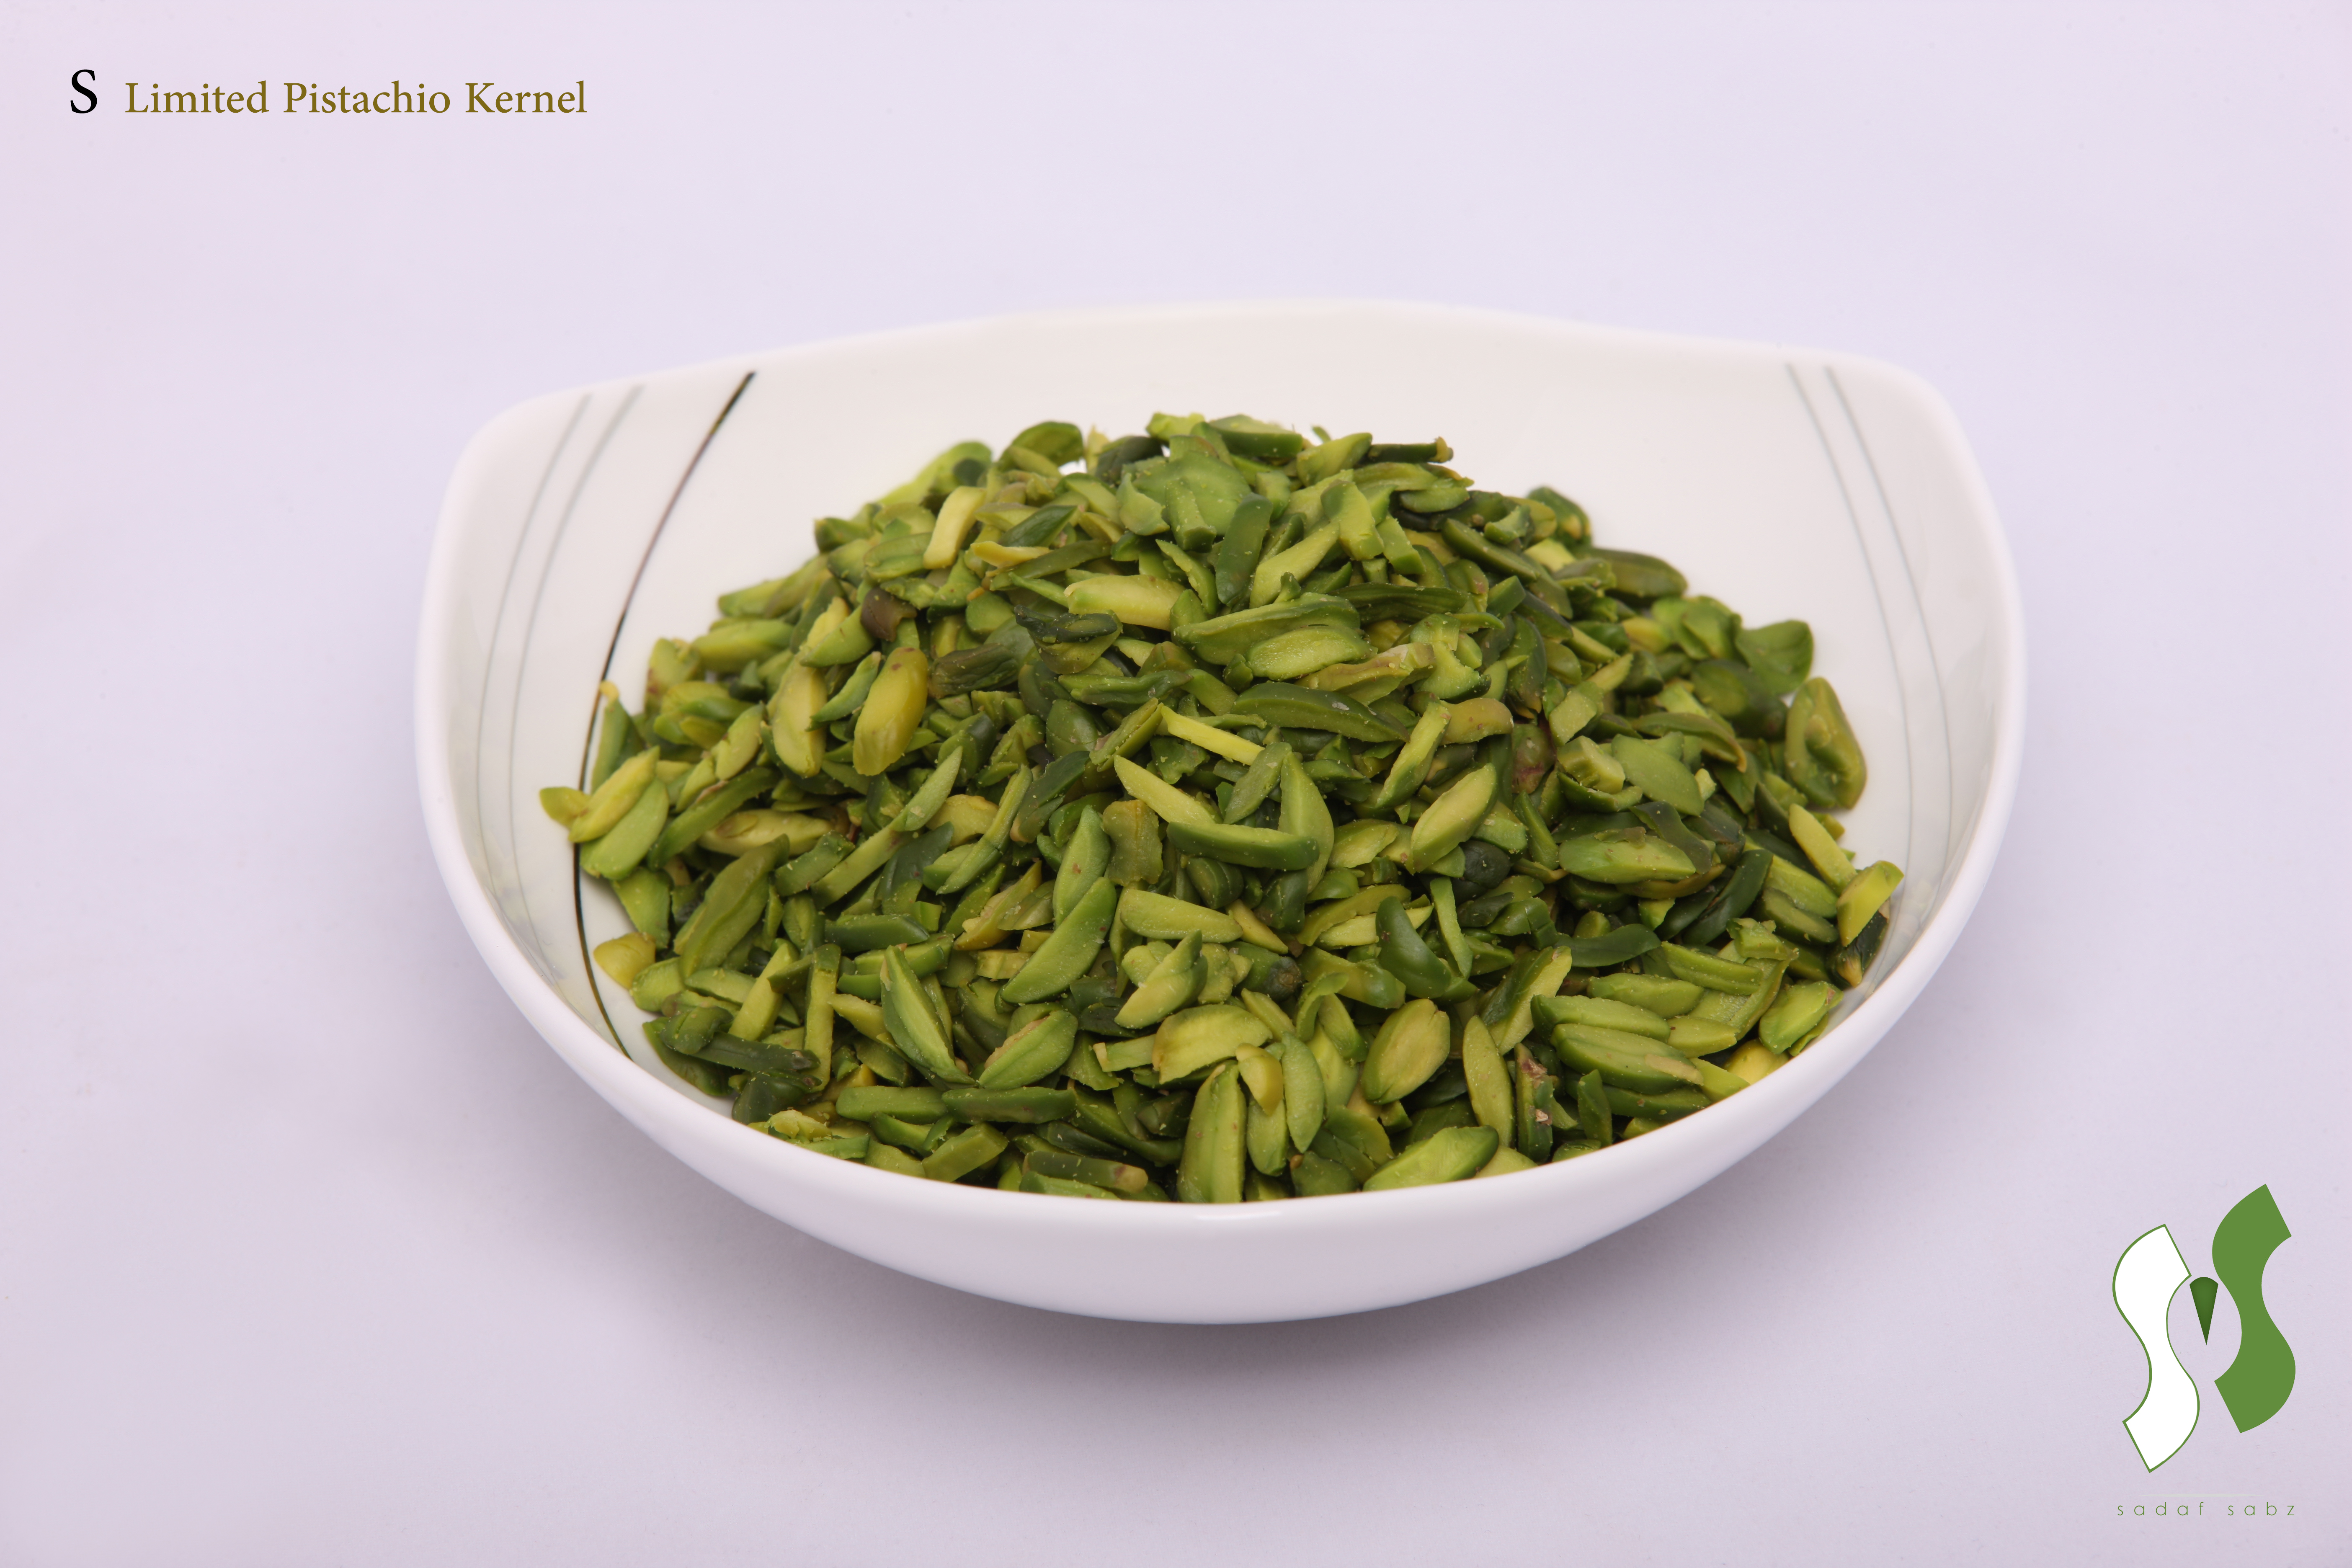 slivered-pistachio-kernel-grade-a